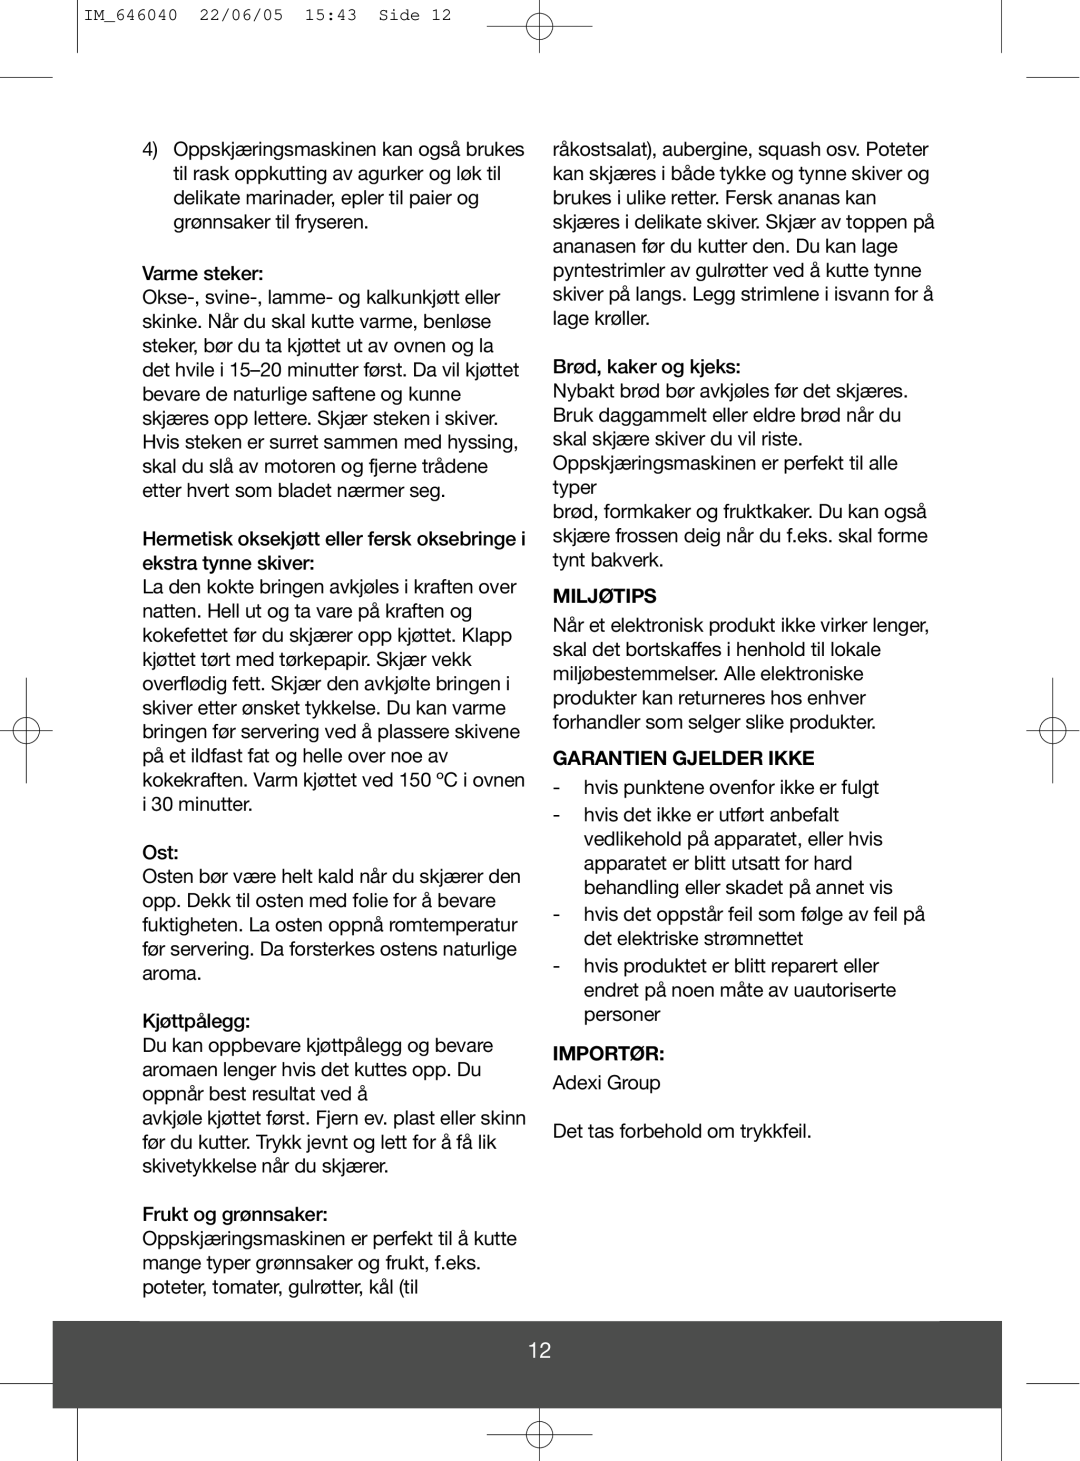 Melissa 646-040 manual Miljøtips, Garantien Gjelder Ikke, Importør 